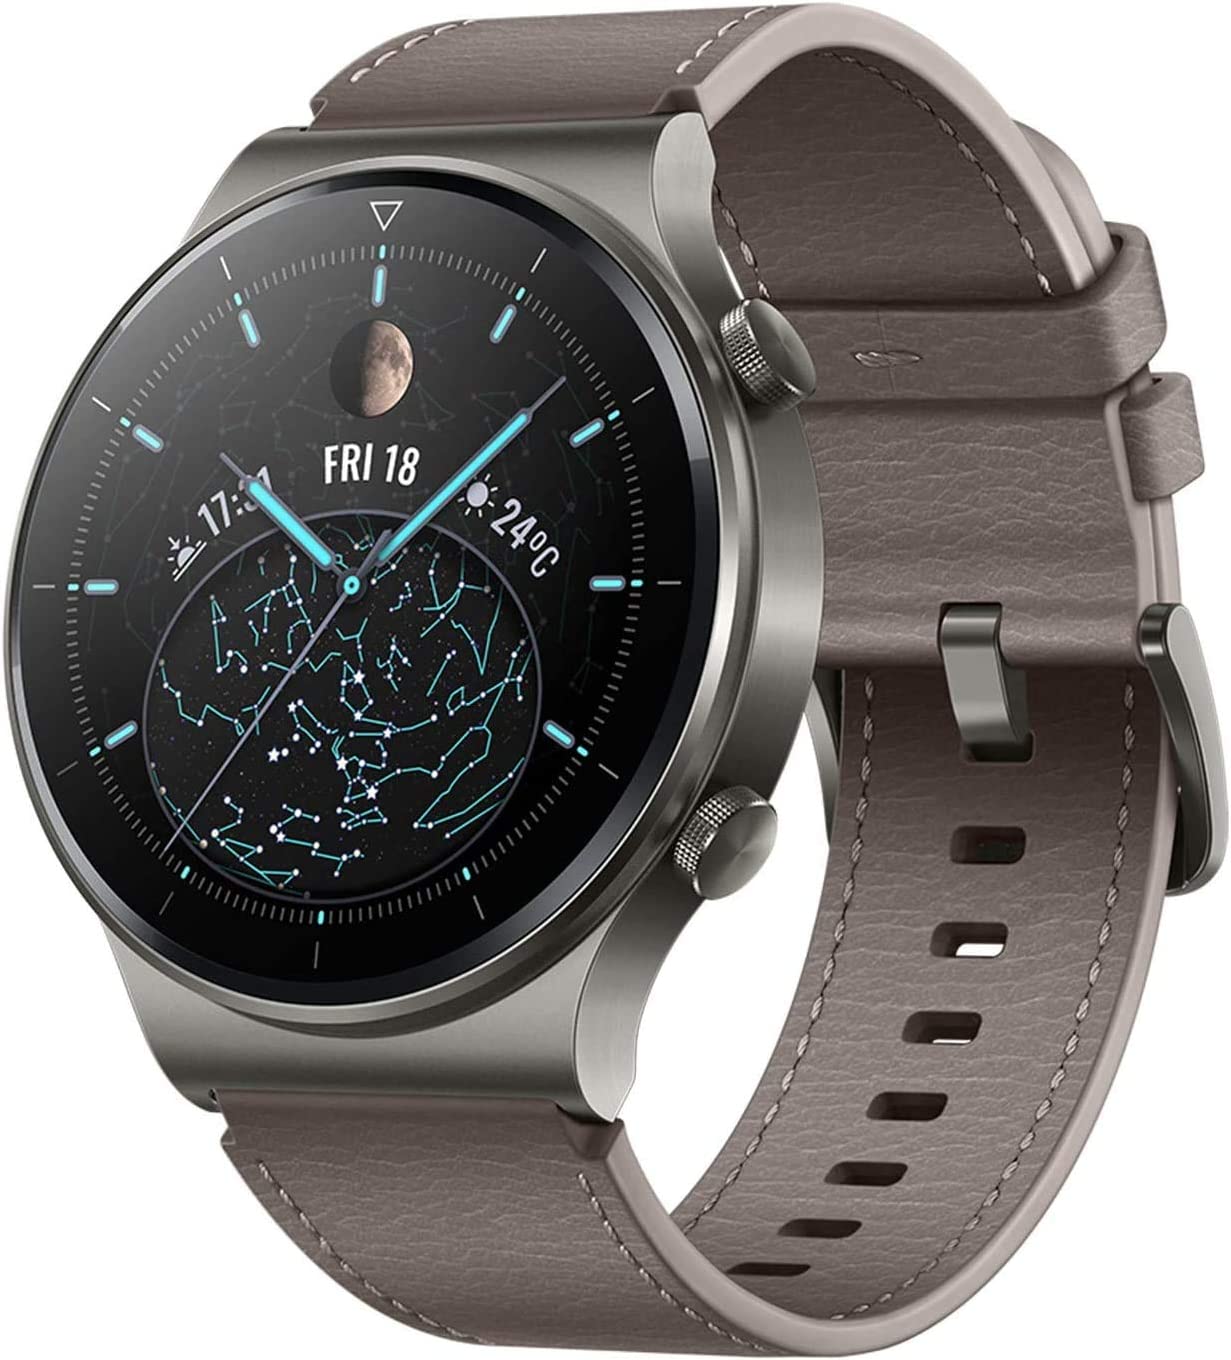 HUAWEI Watch GT 2 Pro Smart Watch - Smart Tech Shopping